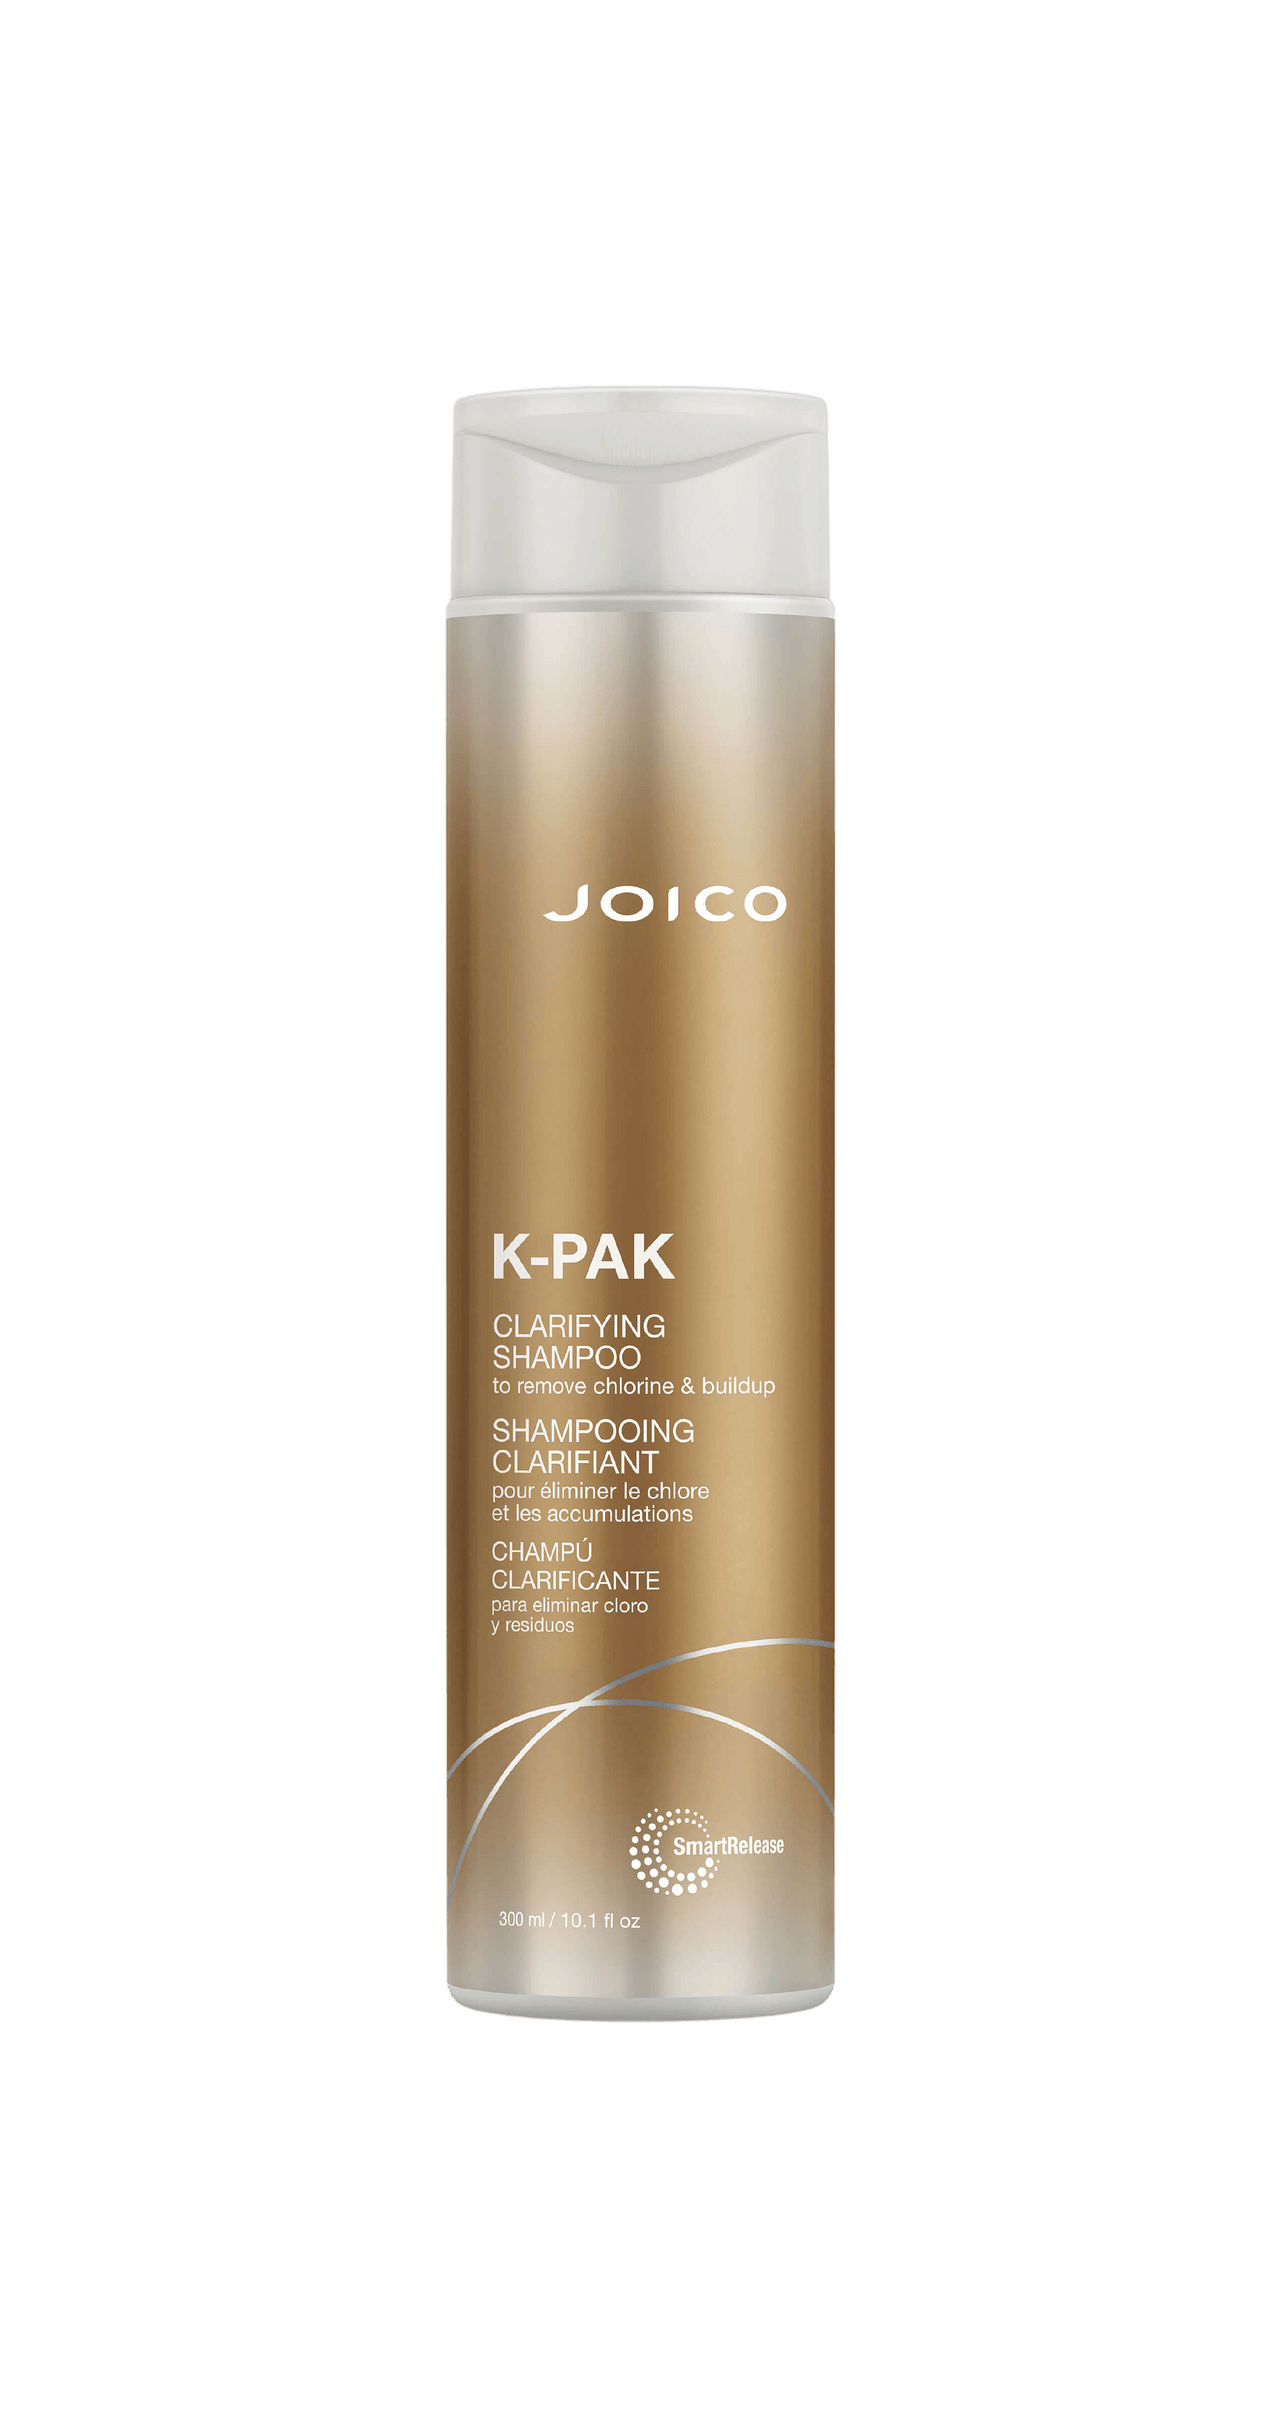 Joico  K-Pak Clarifying Shampoo 300mL Bottle